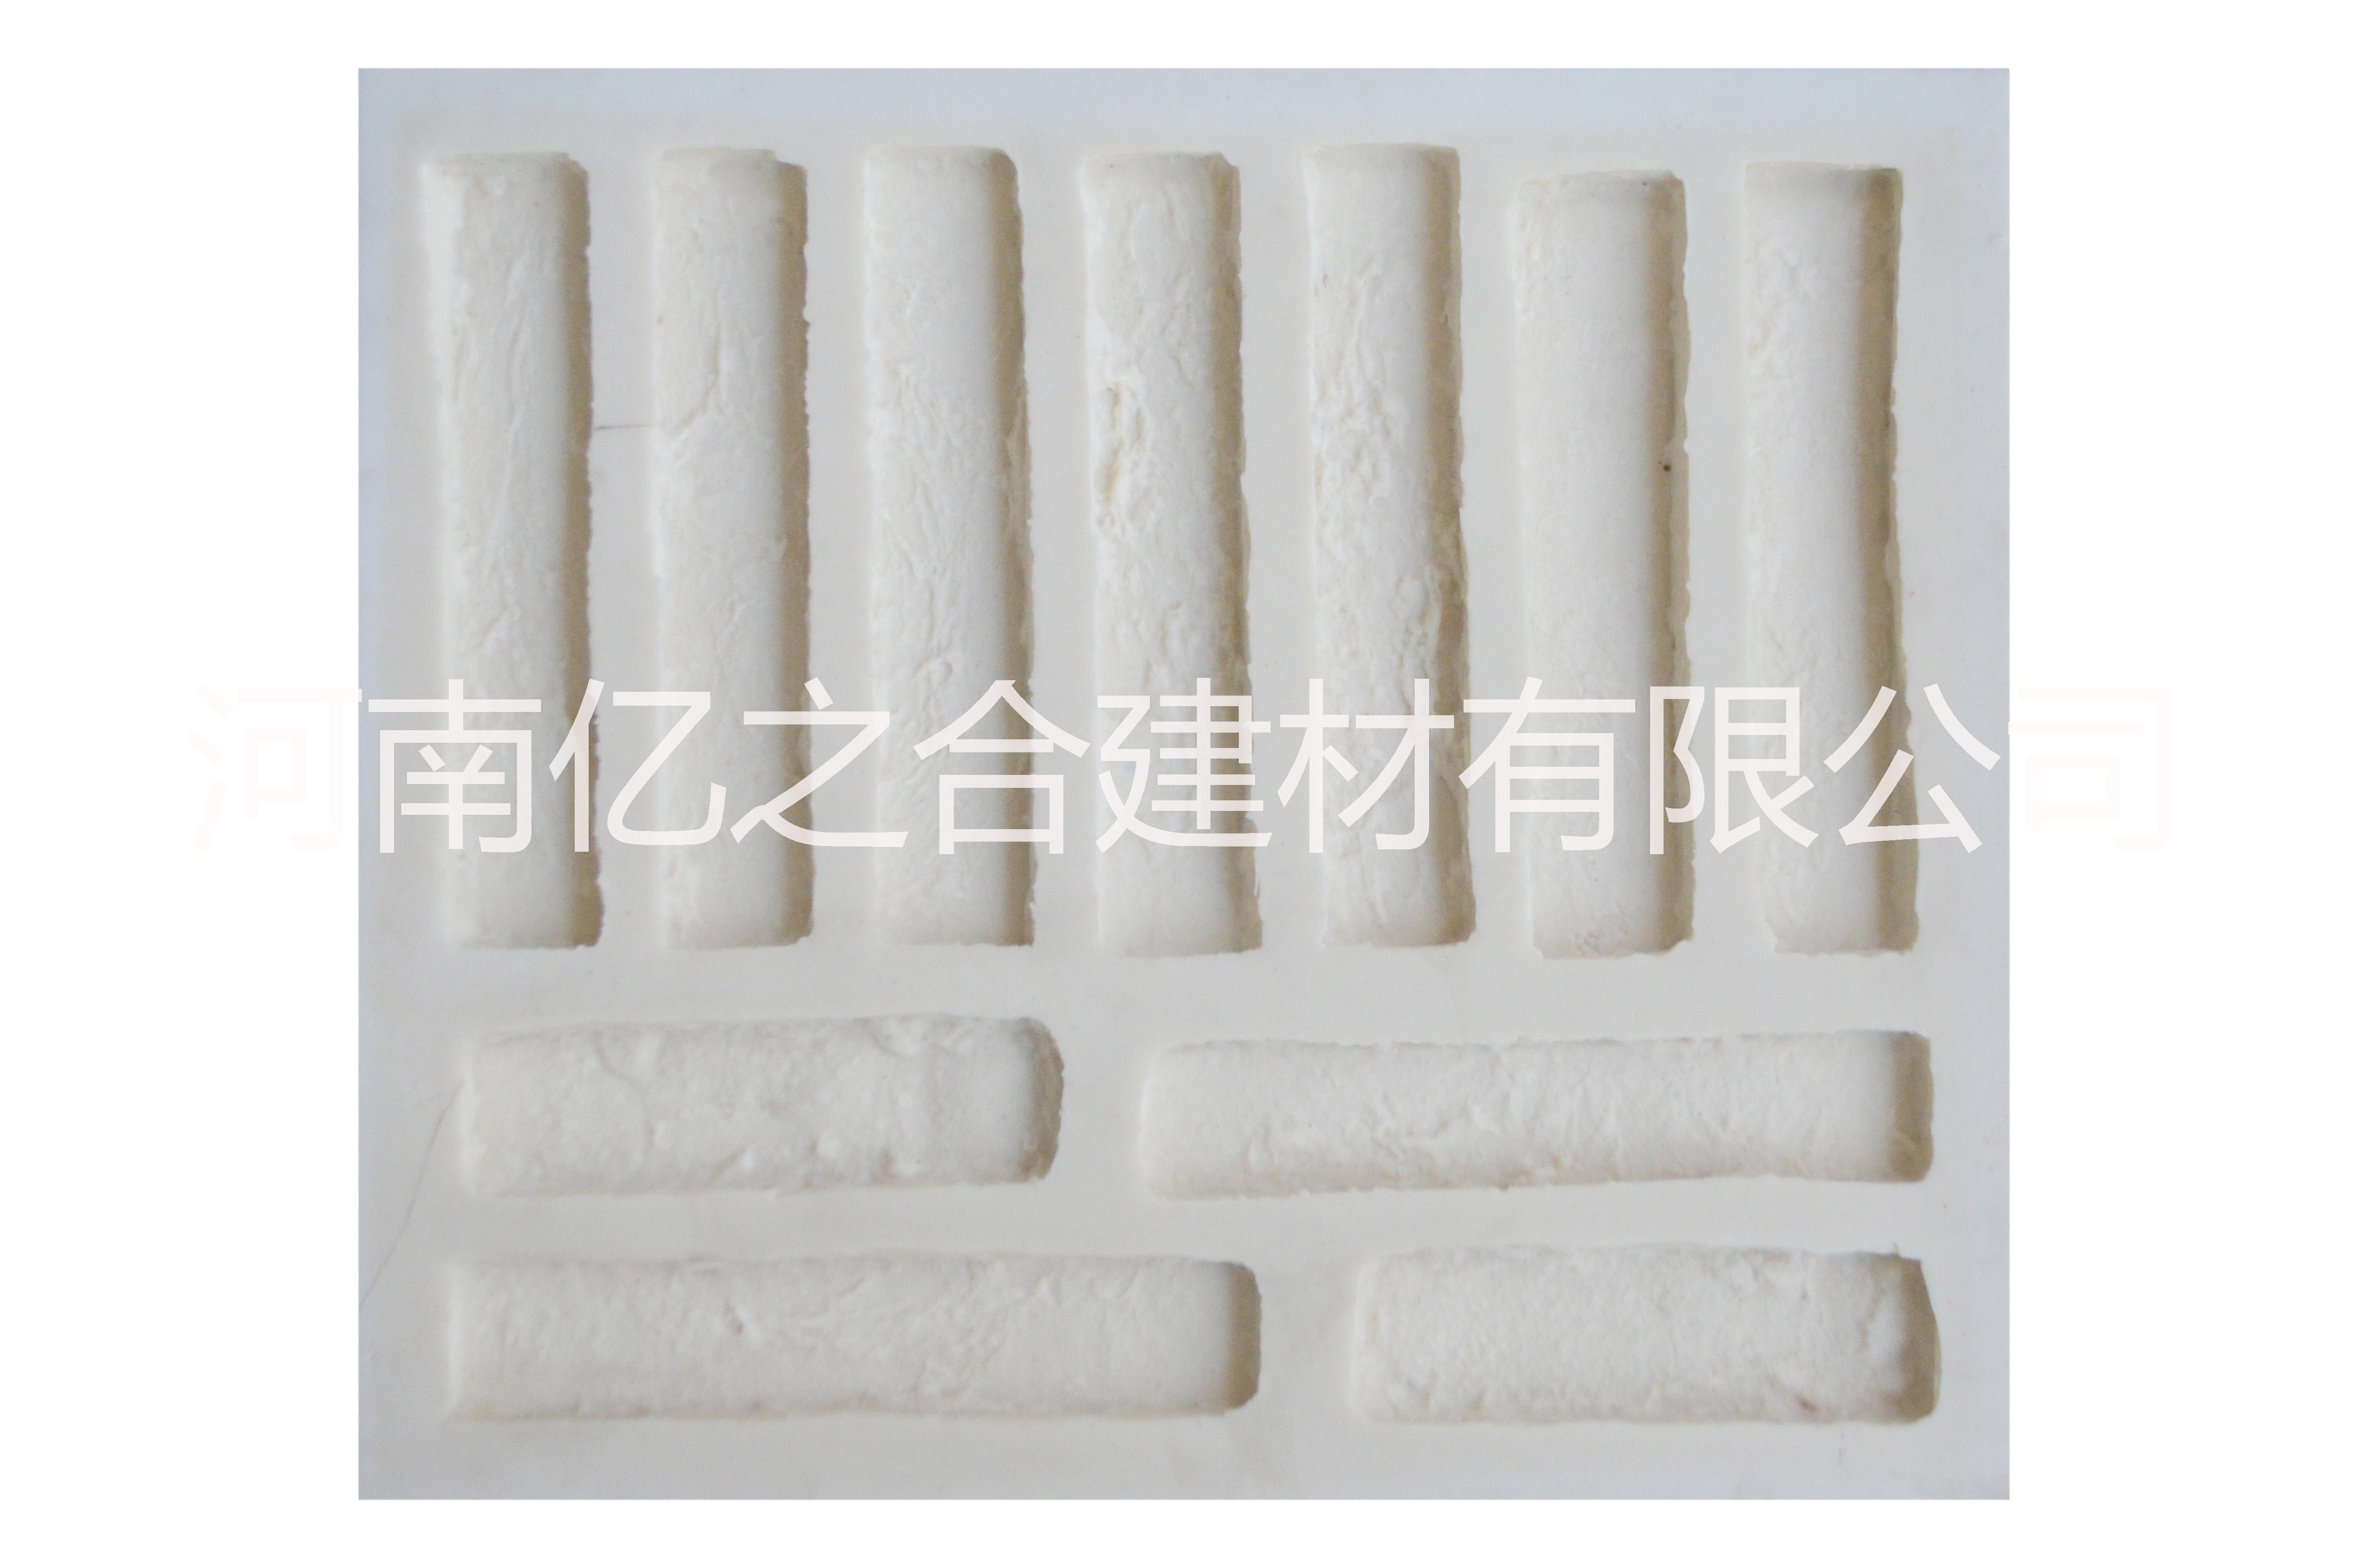 人造文化石模具亿之合PVC模具 文化砖 PVC模具 人造文化石模具厂